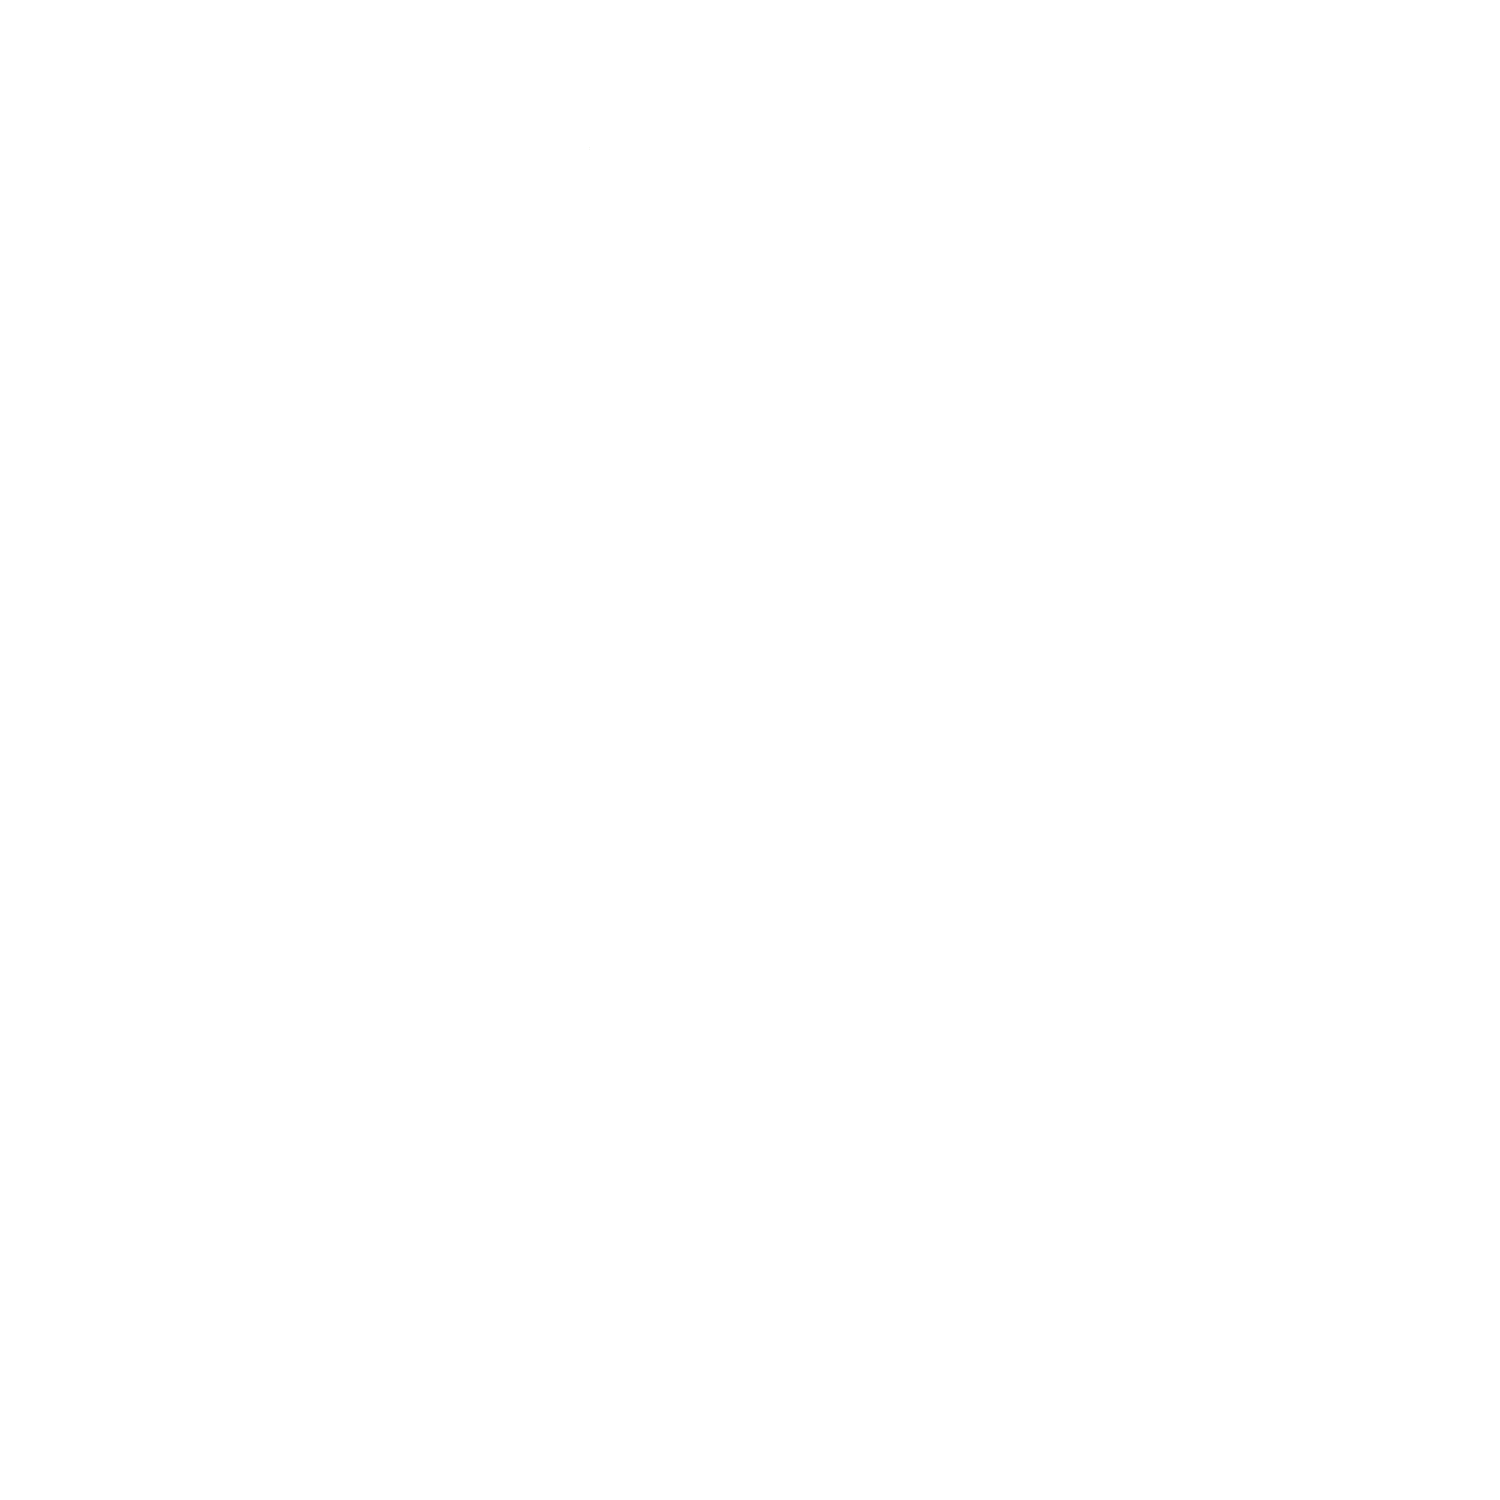 LucyGoose Ice Creamery